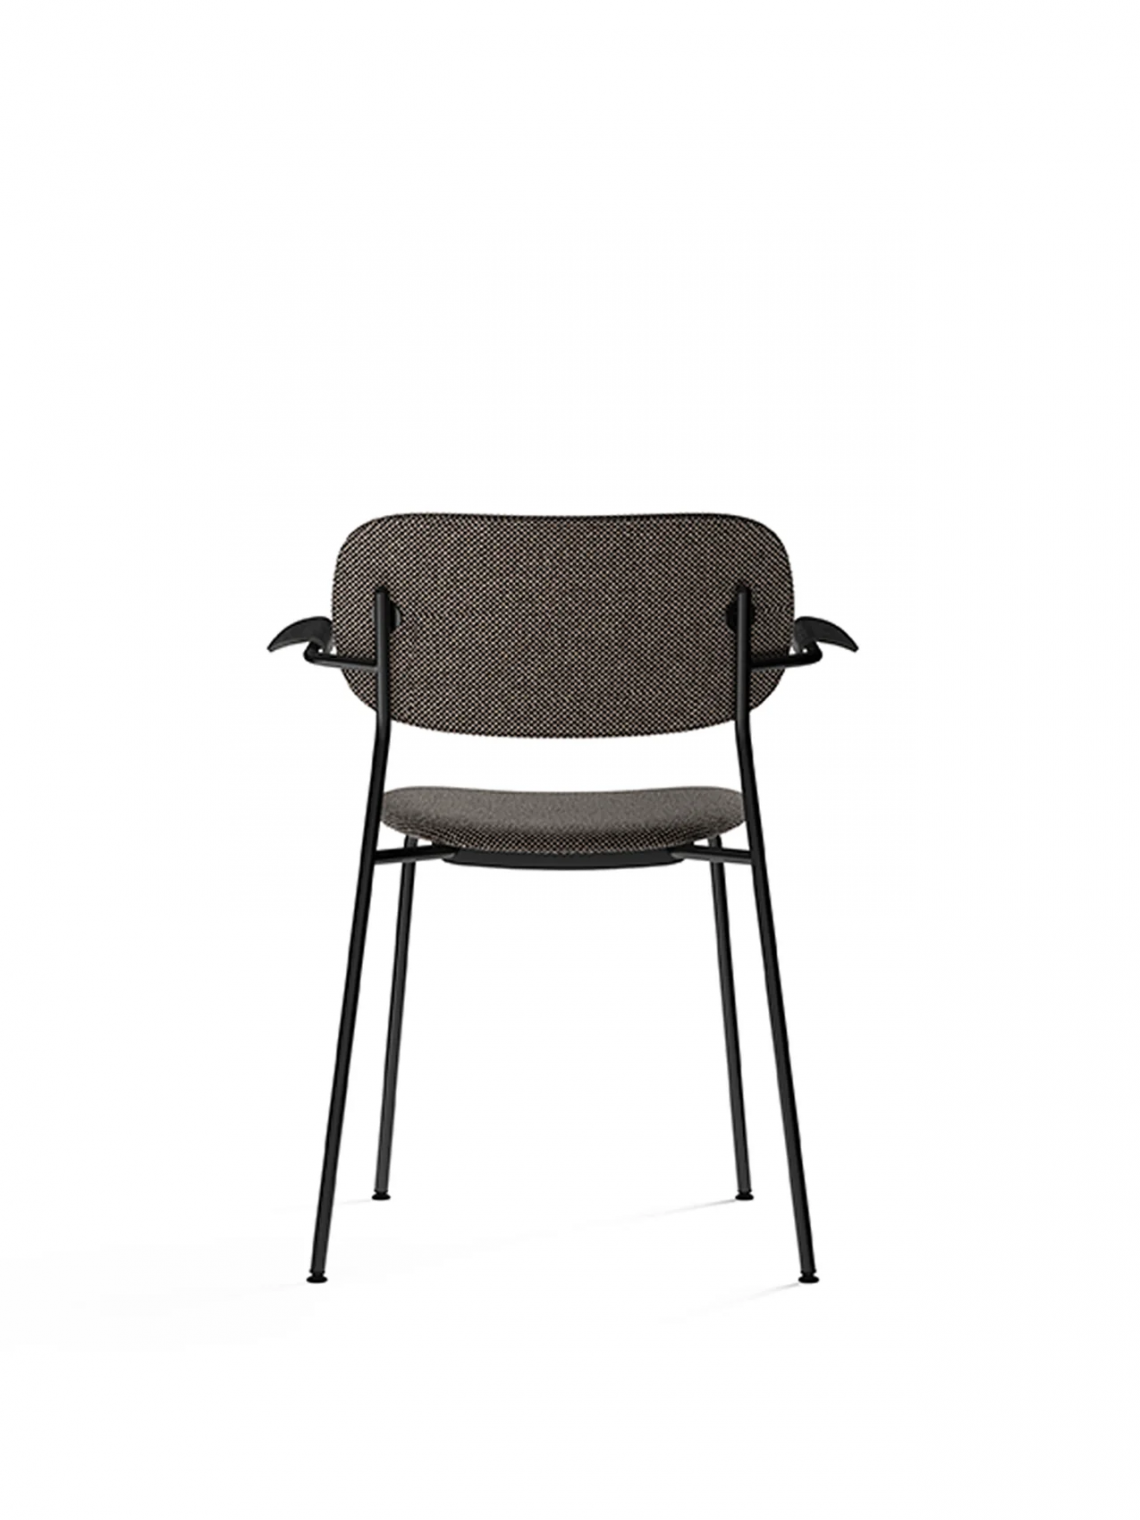 Co upholstered seat with armrest, Black餐椅细节图3